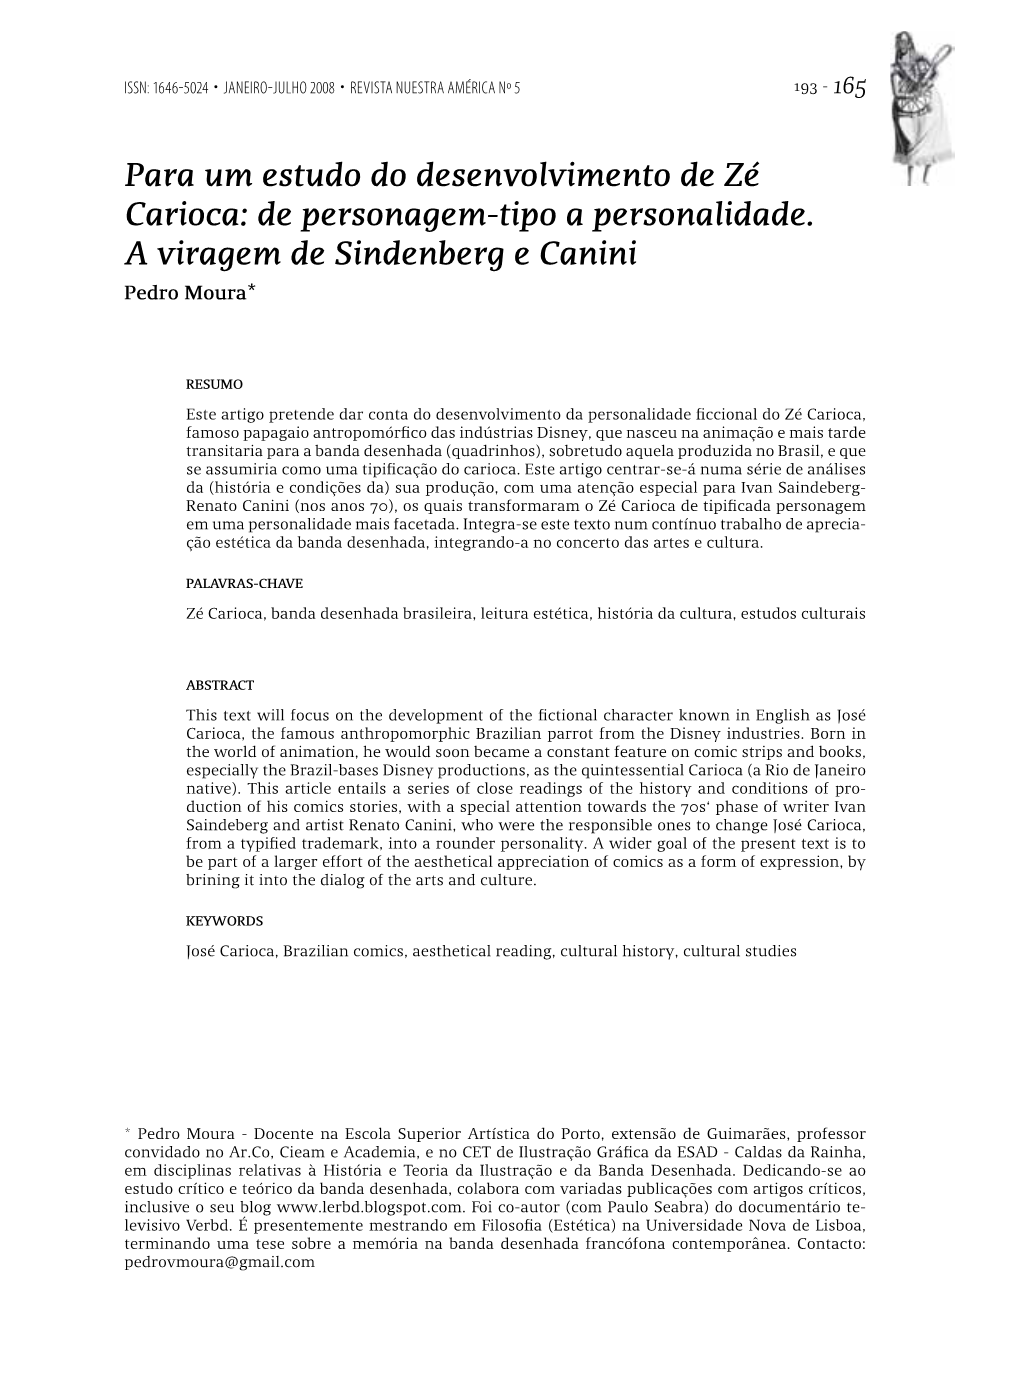 Para Um Estudo Do Desenvolvimento De Zé Carioca: De Personagem-Tipo a Personalidade